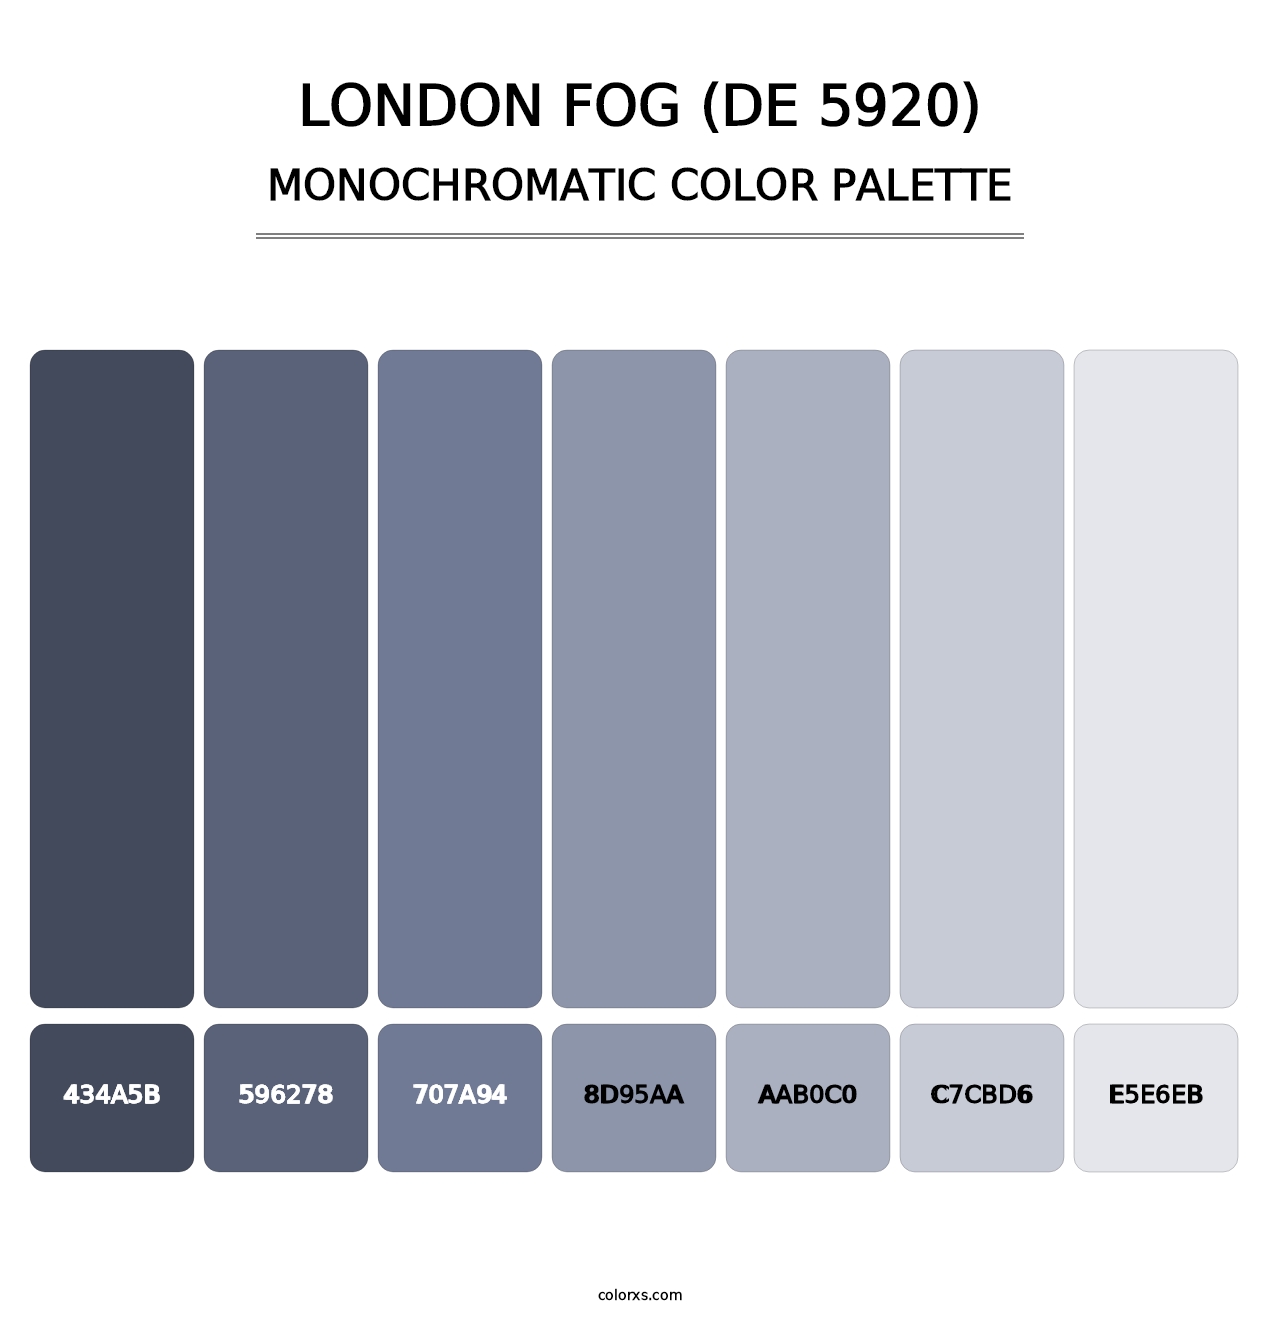 London Fog (DE 5920) - Monochromatic Color Palette